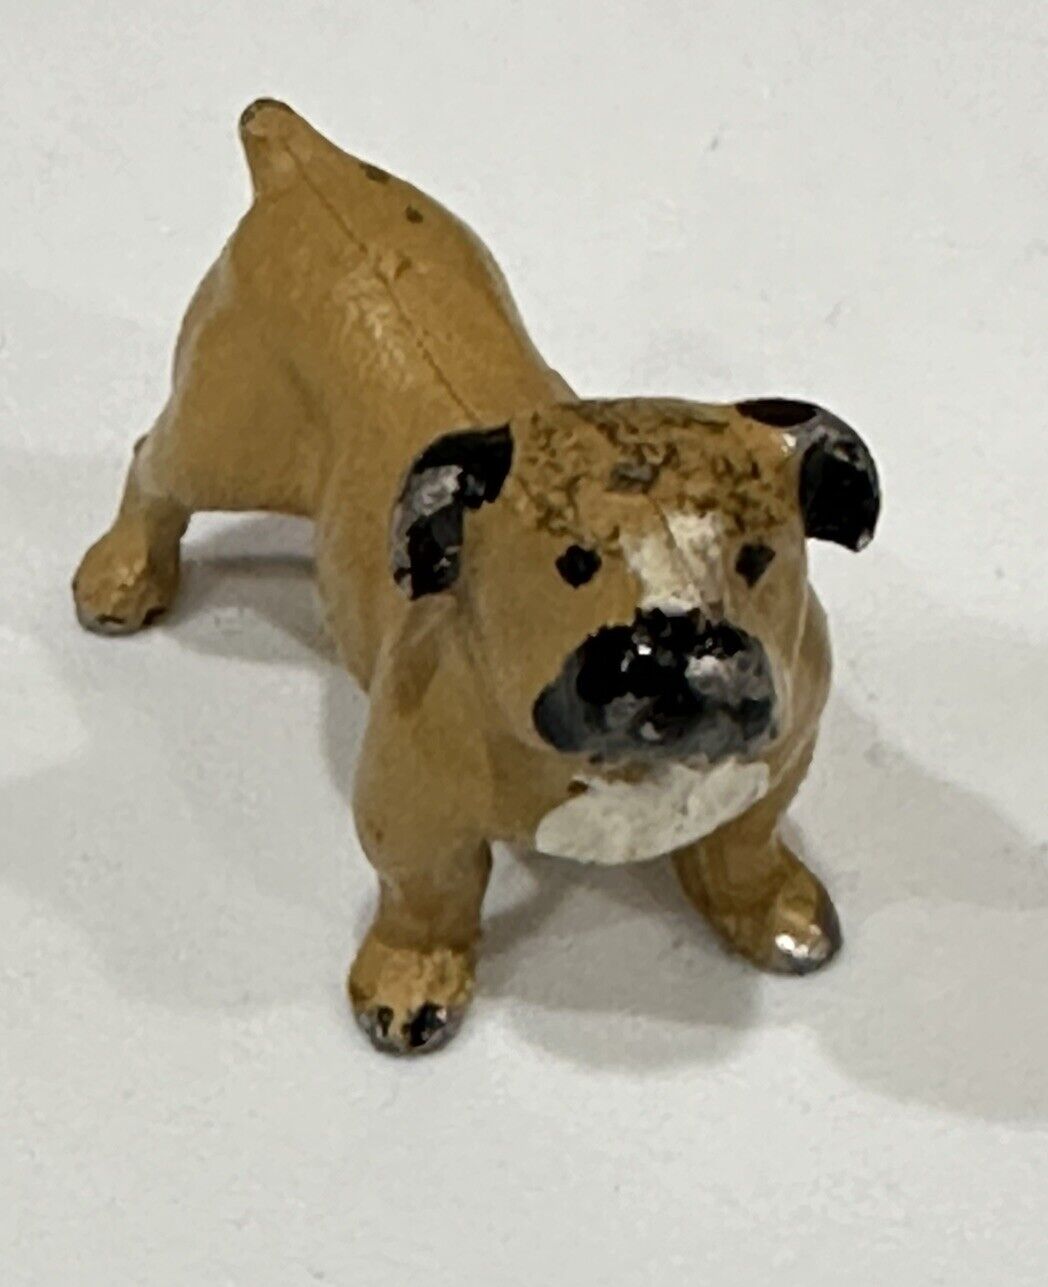 Vintage Hubley Wilton ? Cast iron Metal Hand Painted Pug Dog Figure Figurine